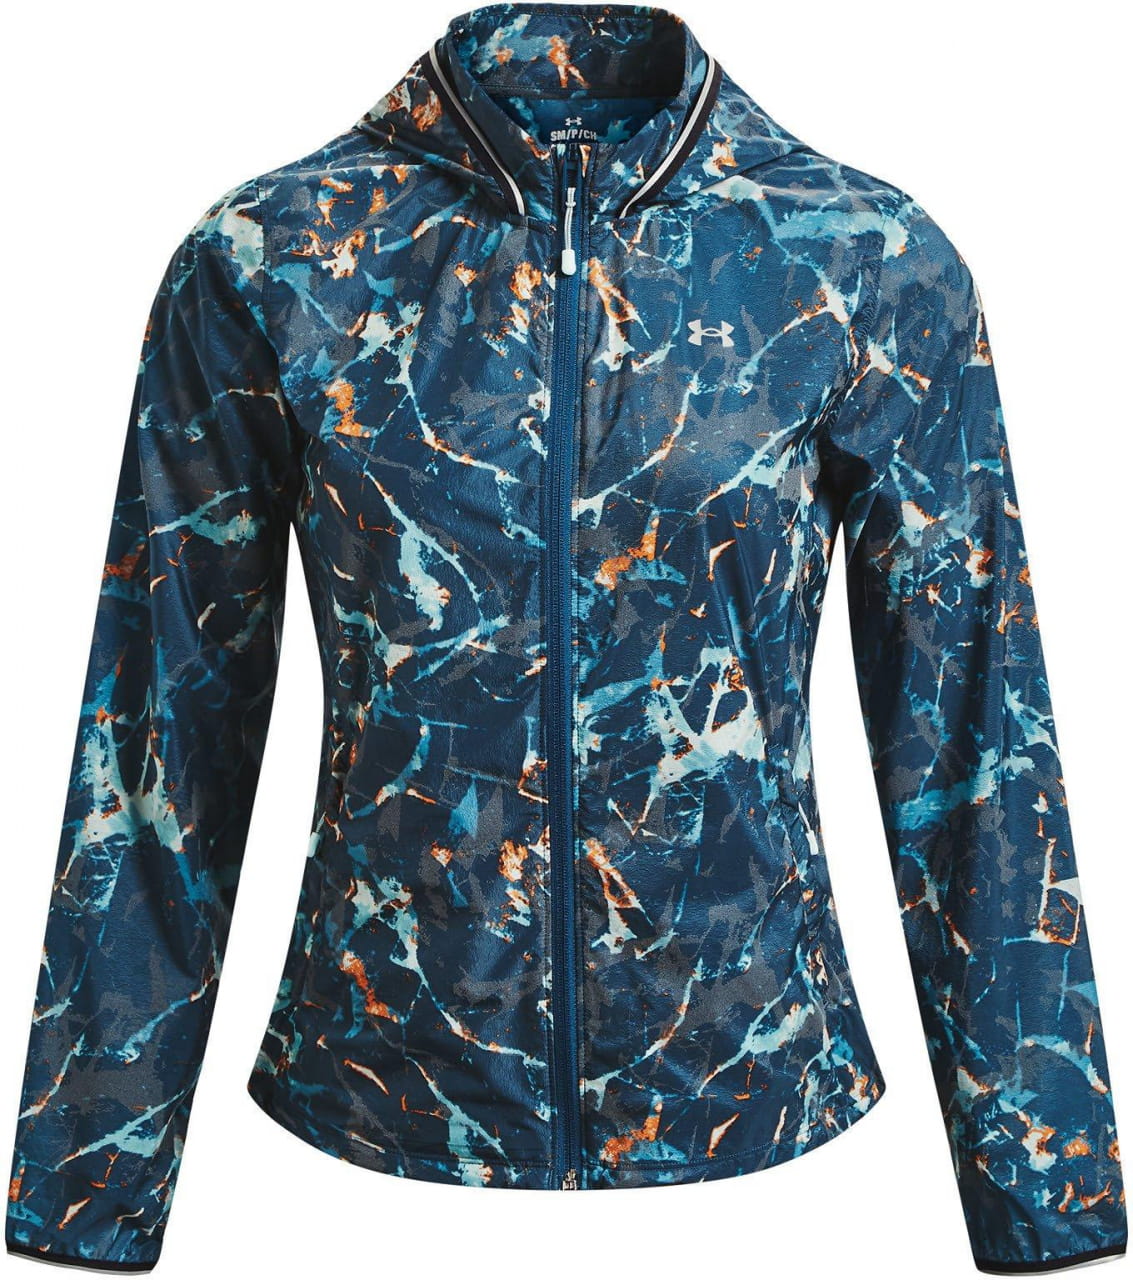 Armour Cold Jacket - chaqueta de mujer | Snsp.es